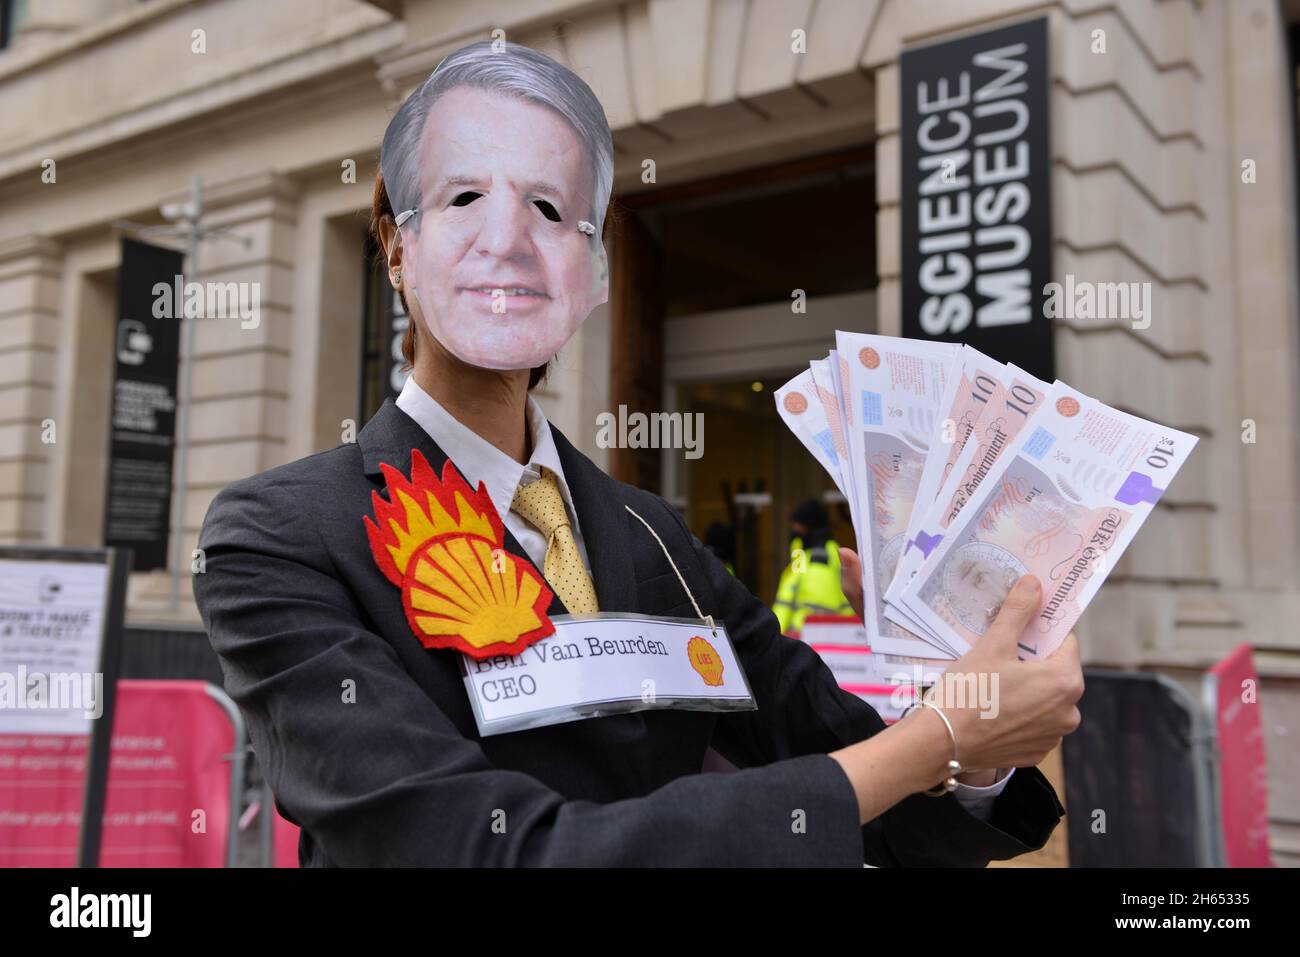 Durante la dimostrazione, un protester vestito come CEO della Shell ben van Beurden pone con falsi soldi. Gli attivisti della ribellione dell'estinzione hanno organizzato una protesta di fronte al Museo della Scienza di South Kensington contro la sponsorizzazione del museo da parte delle società di combustibili fossili Shell e Adani. Foto Stock